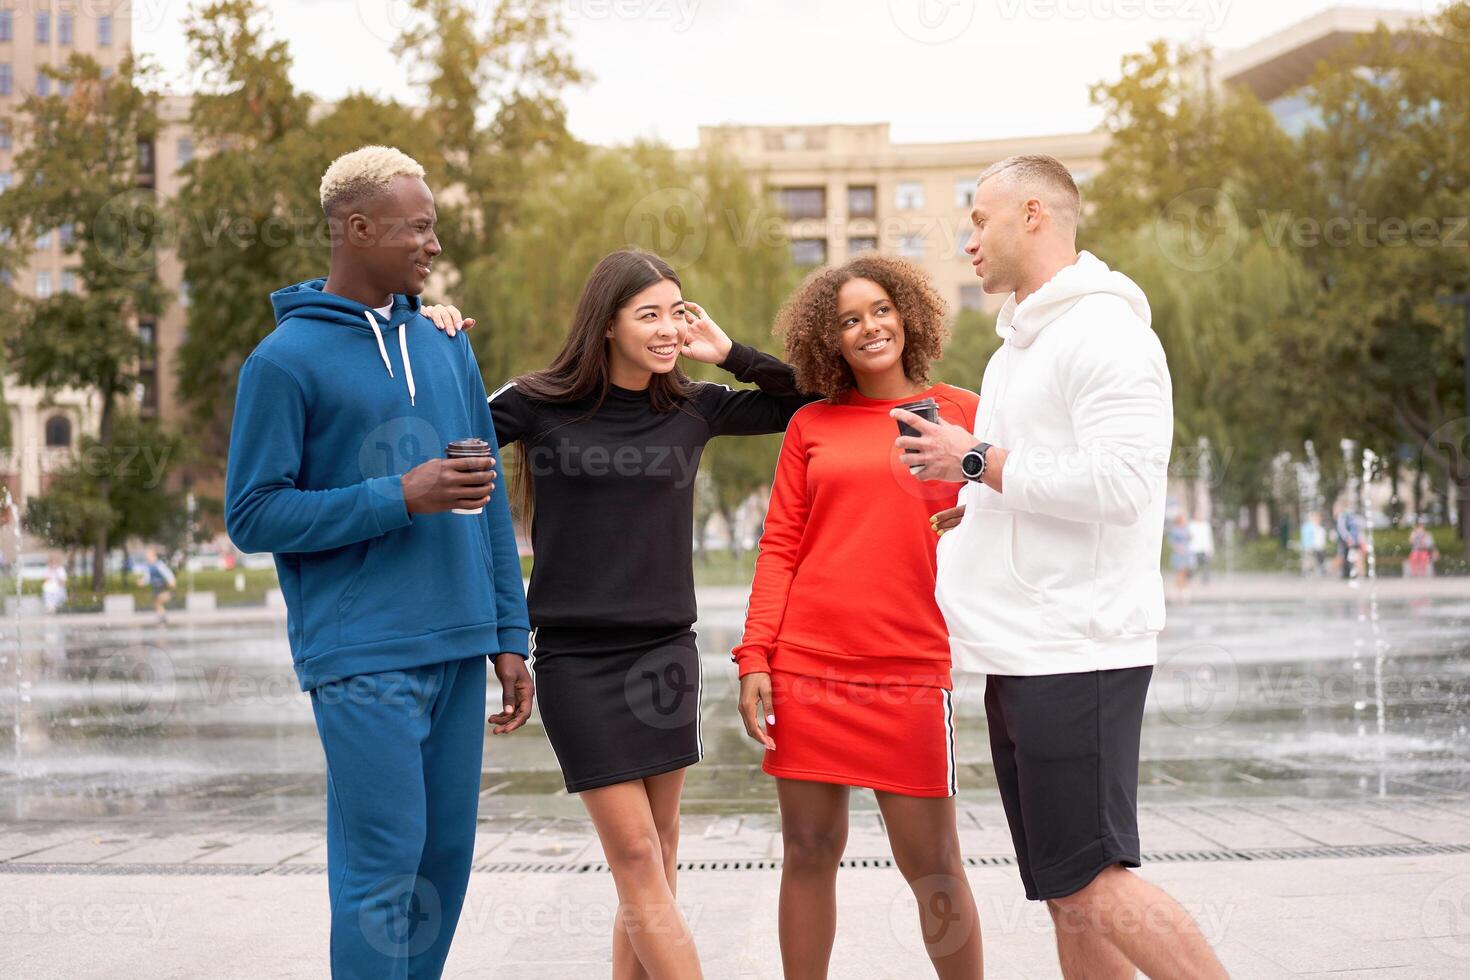 multietnico gruppo persone adolescenziale gli amici. afroamericano, asiatico, caucasico alunno la spesa tempo insieme multirazziale amicizia foto